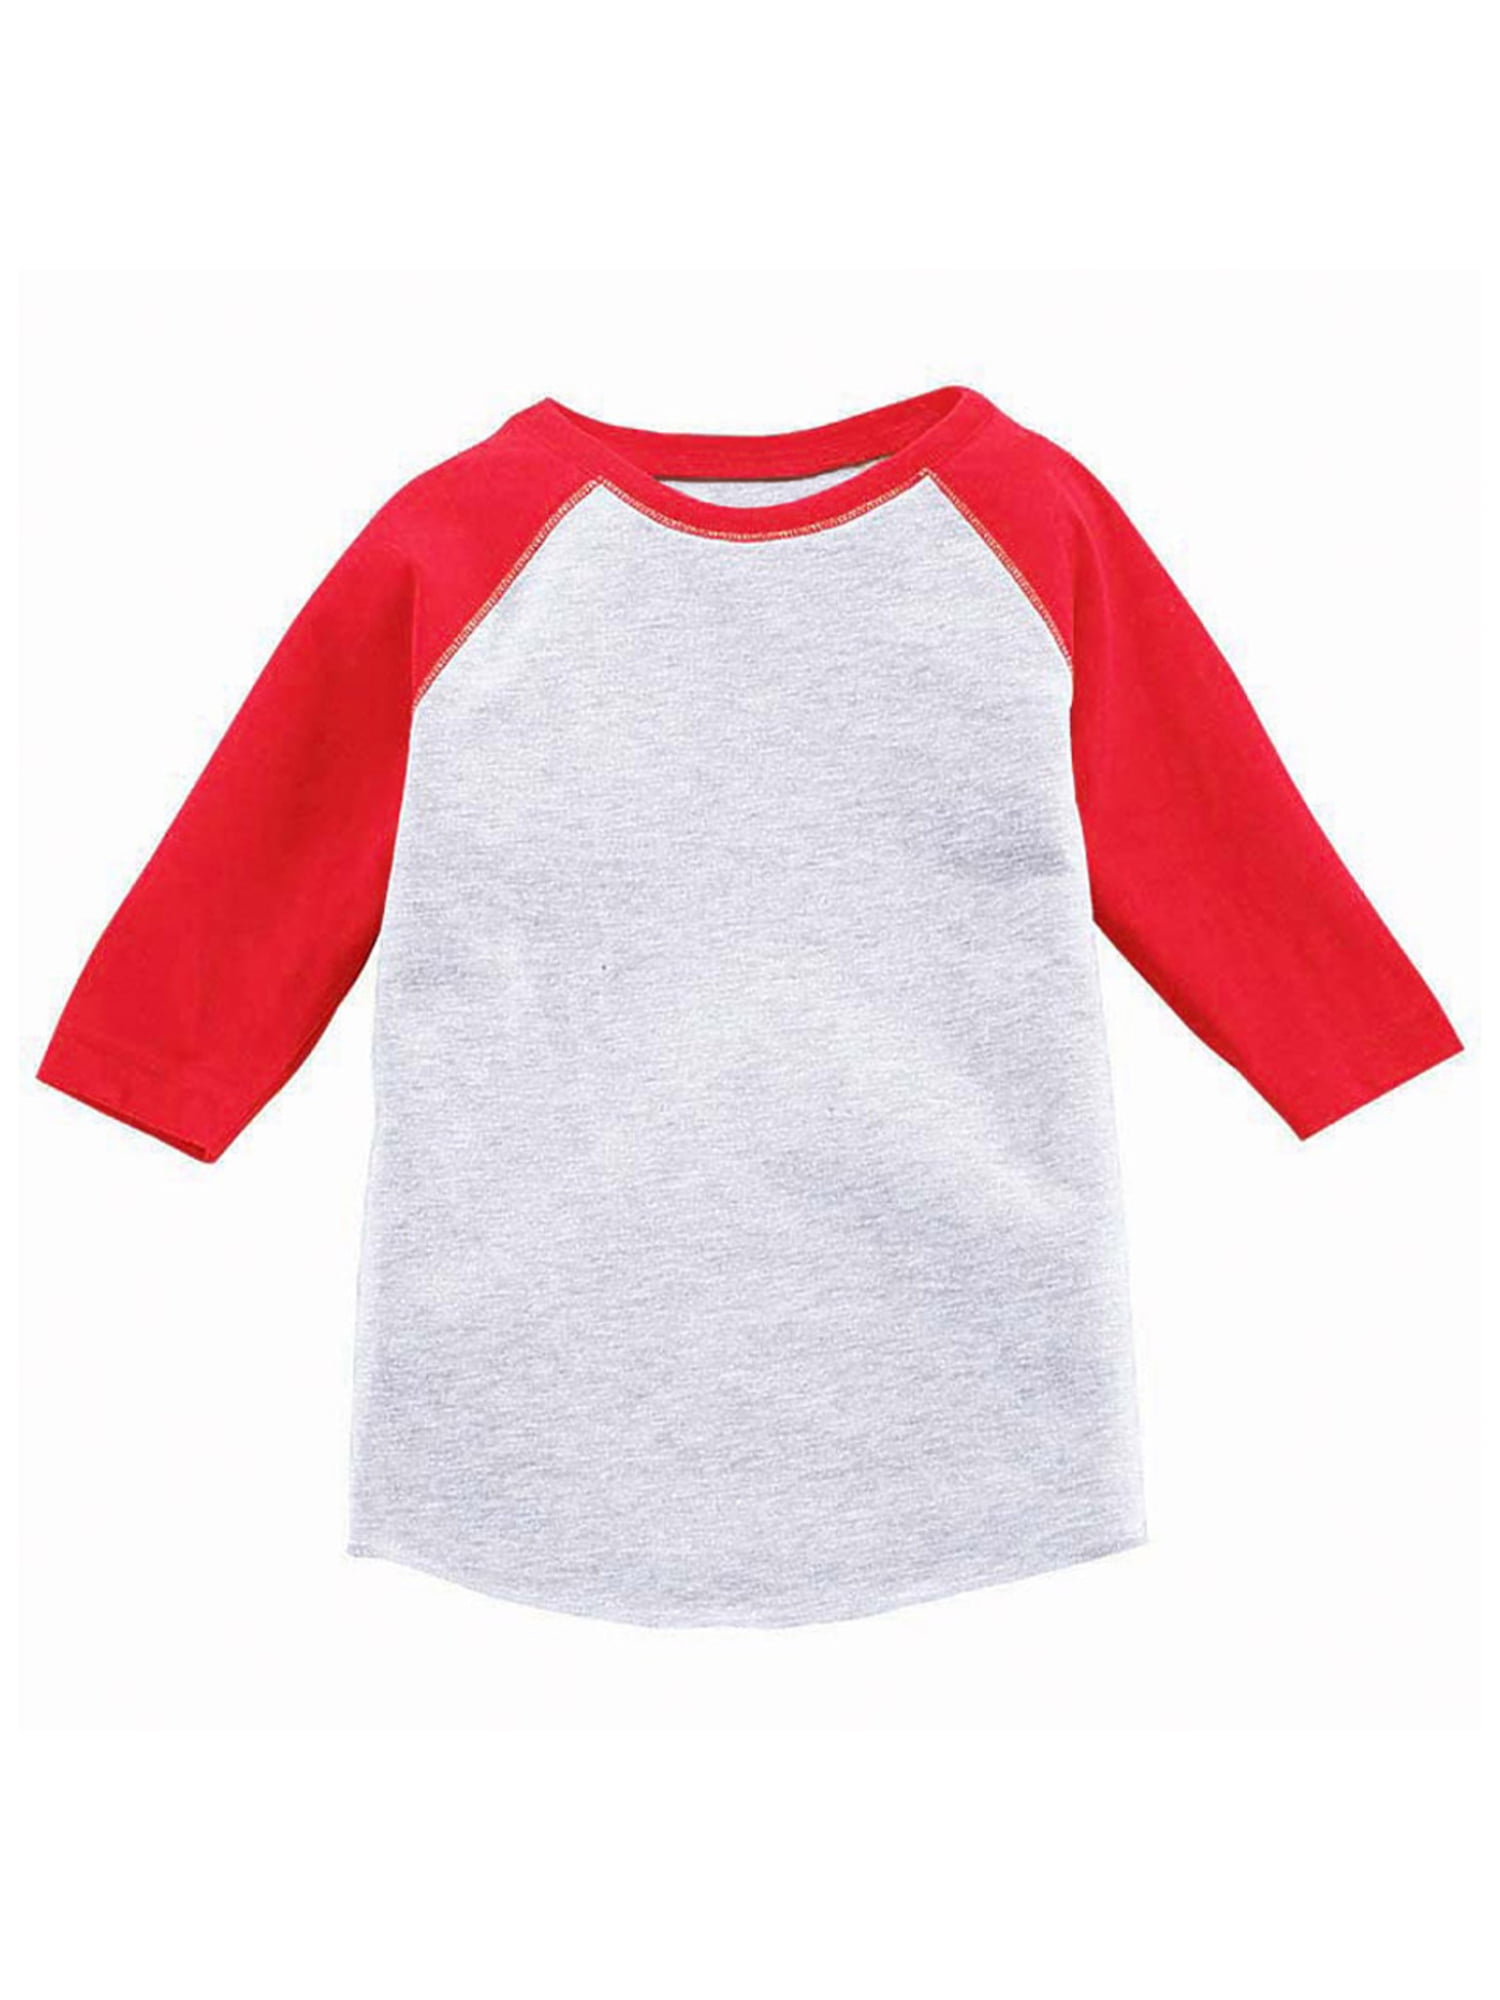 Kids Jersey Raglan T-Shirt Children 3/4 Sleeve Baseball Shirt Top